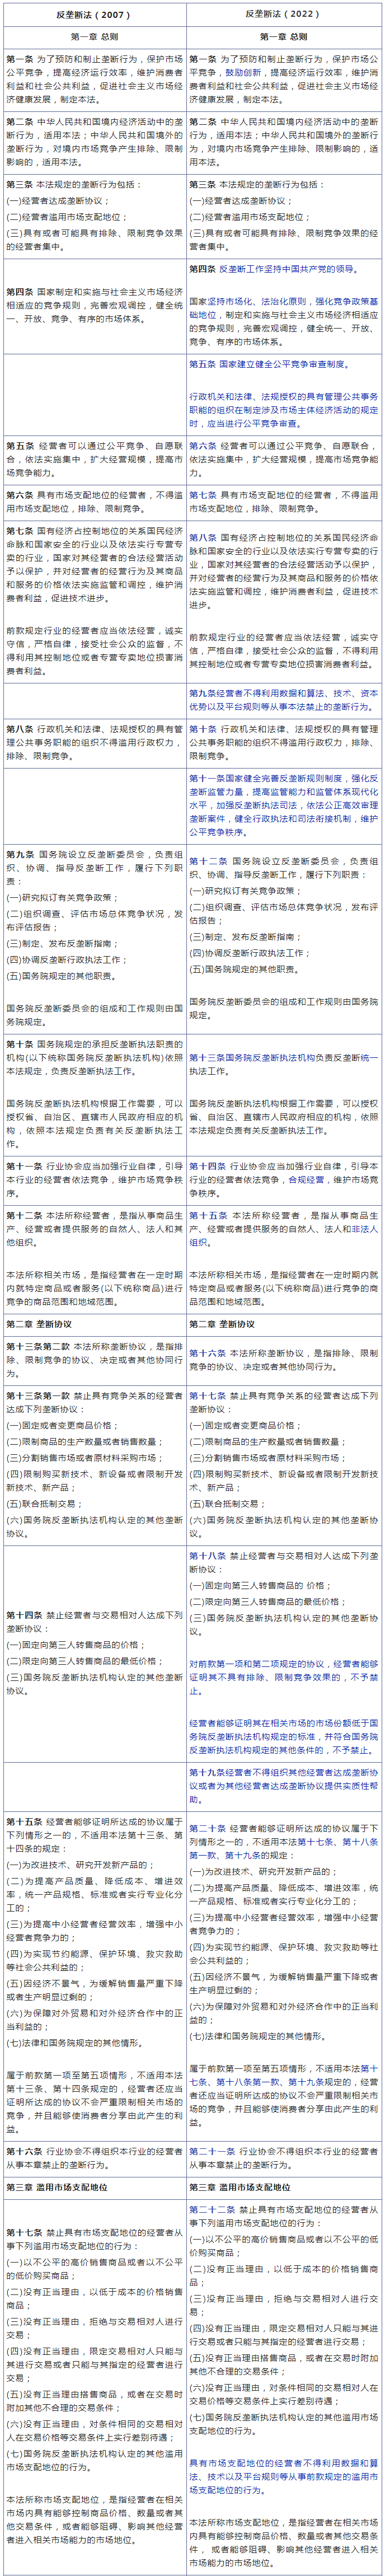 《中华人民共和国反垄断法》修改前后对照表